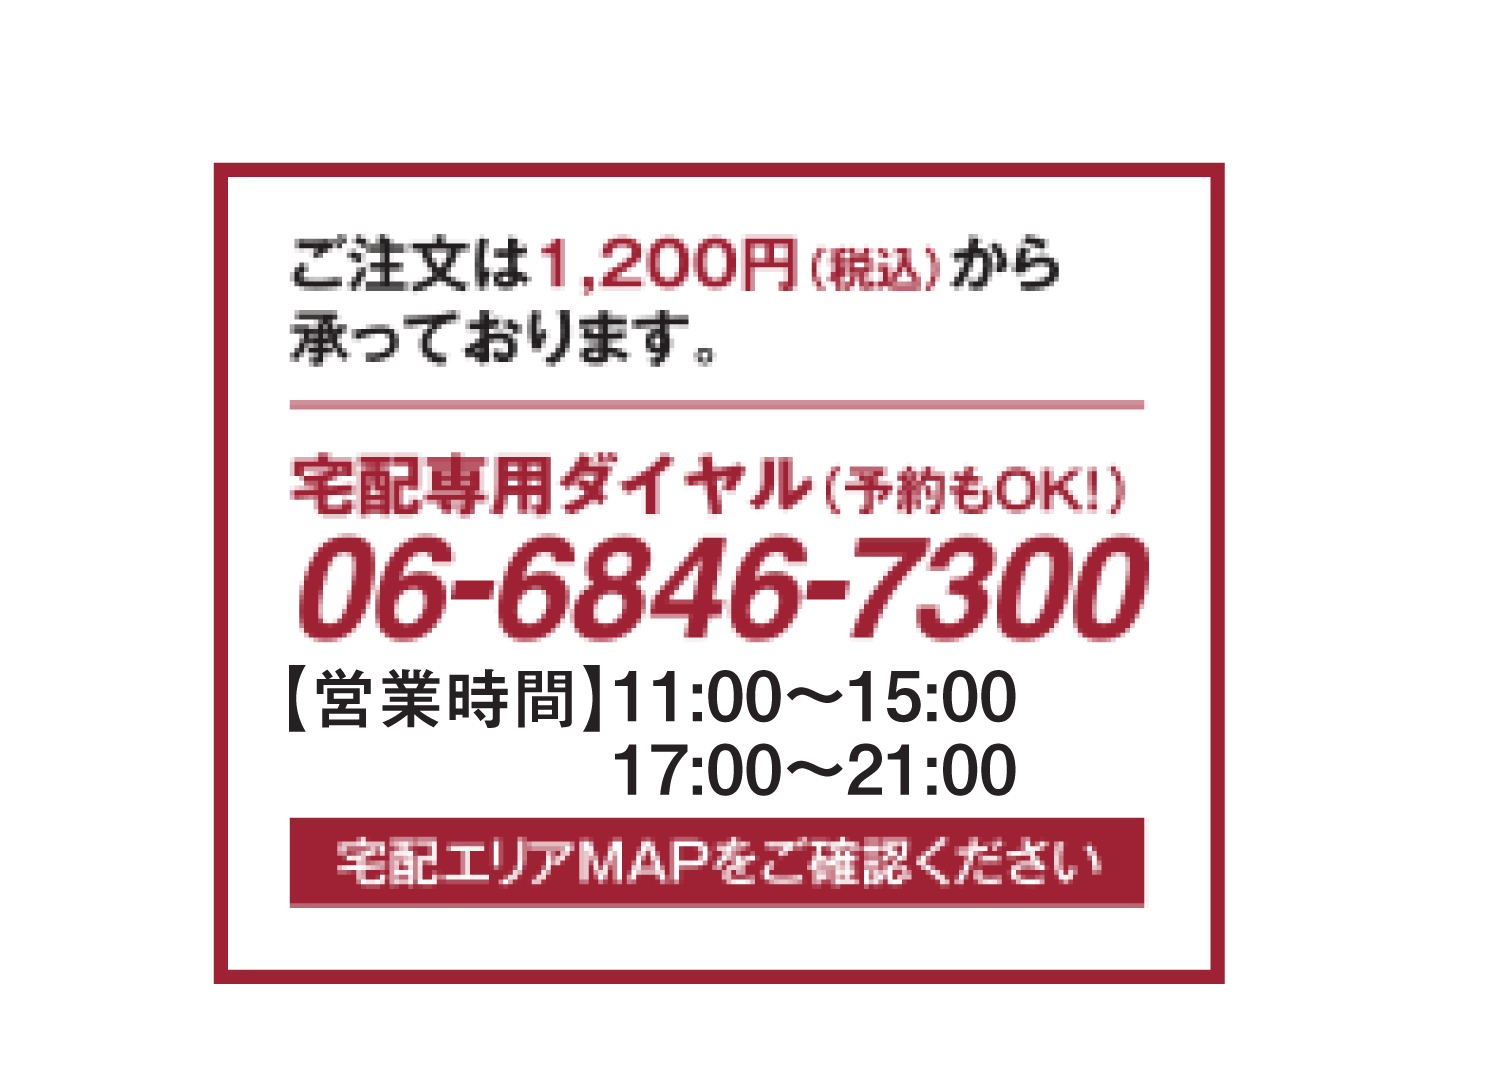 宅配専用ダイヤル(予約もOK!) 06-6846-7300